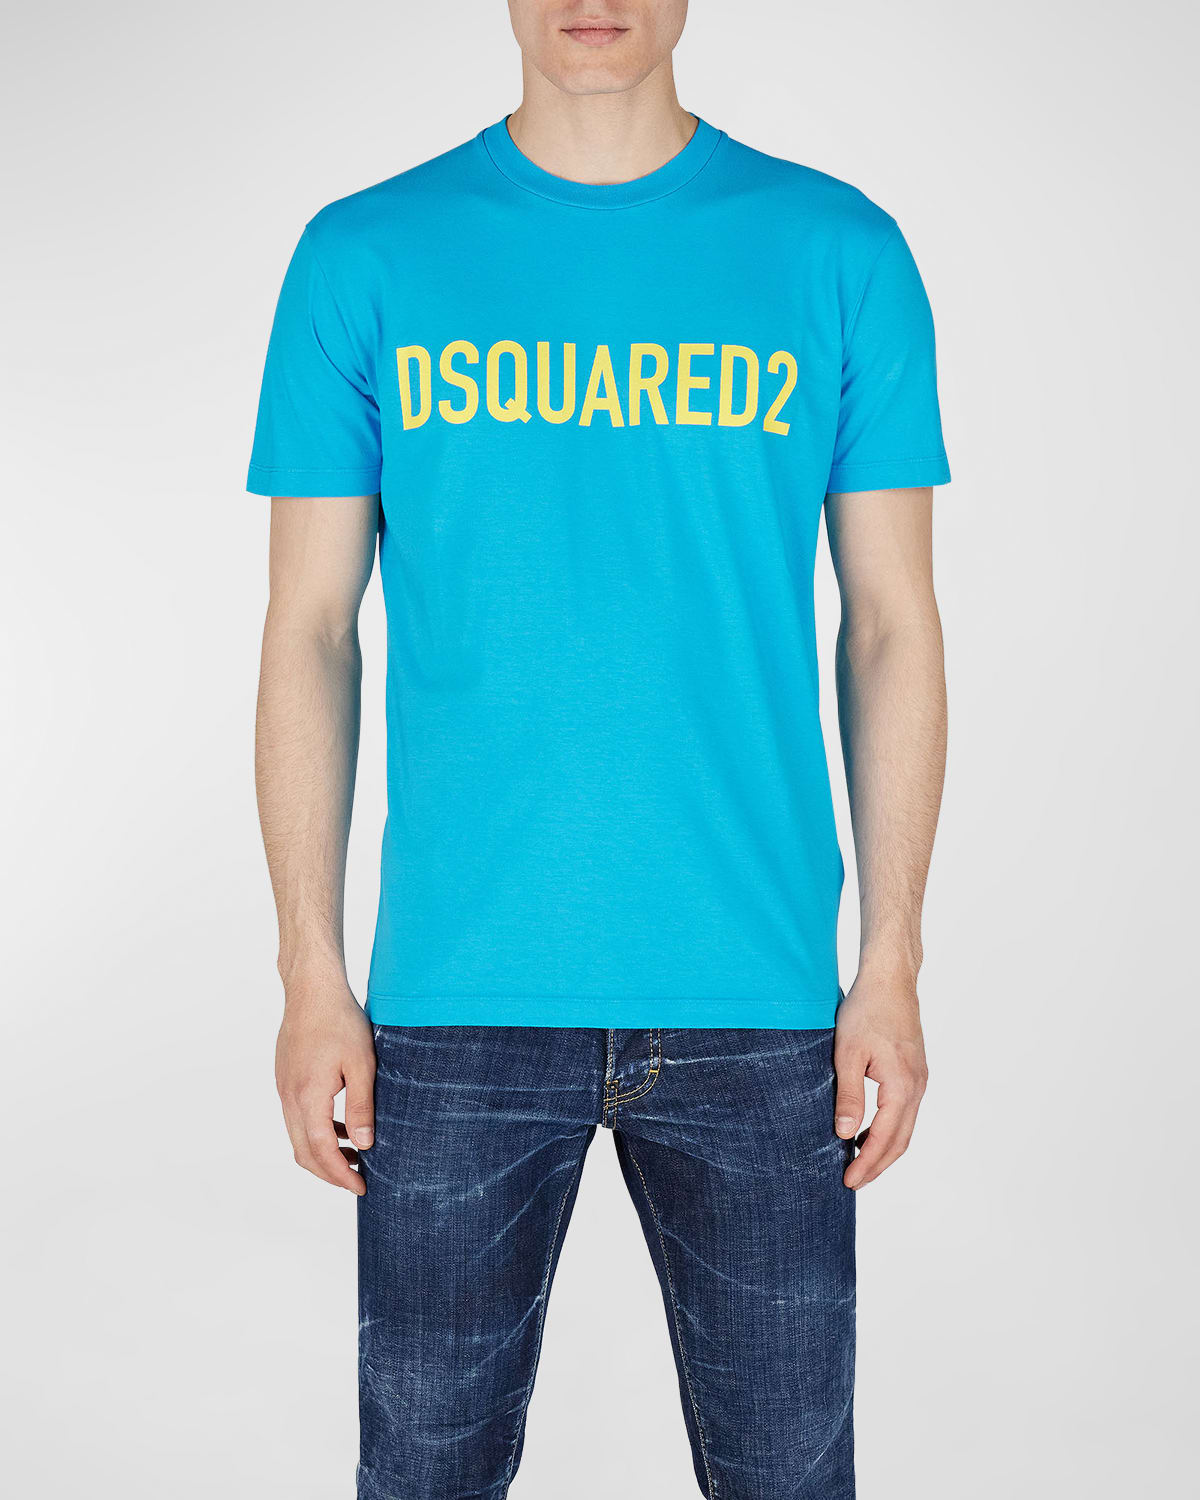 Vertrek naar Zeemeeuw Mijnwerker Dsquared2 T Shirt | Neiman Marcus